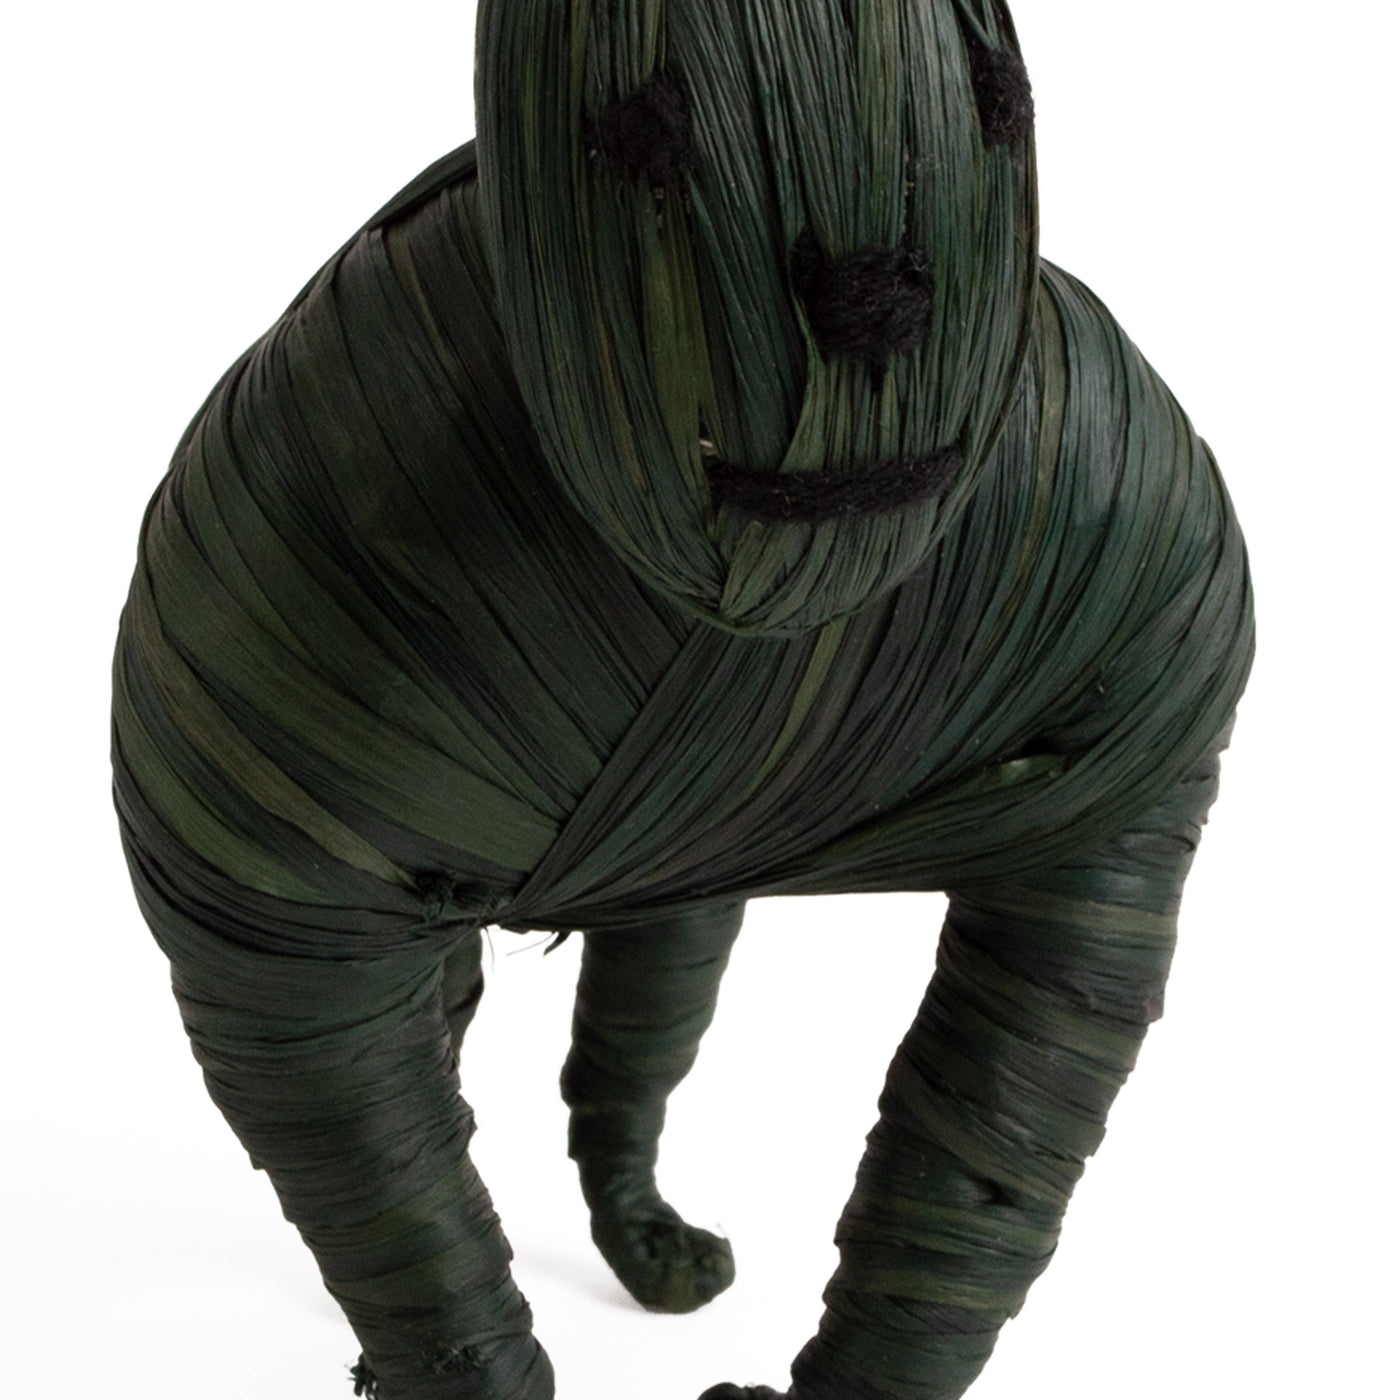 Seratonia Figurine - 6" Gorilla